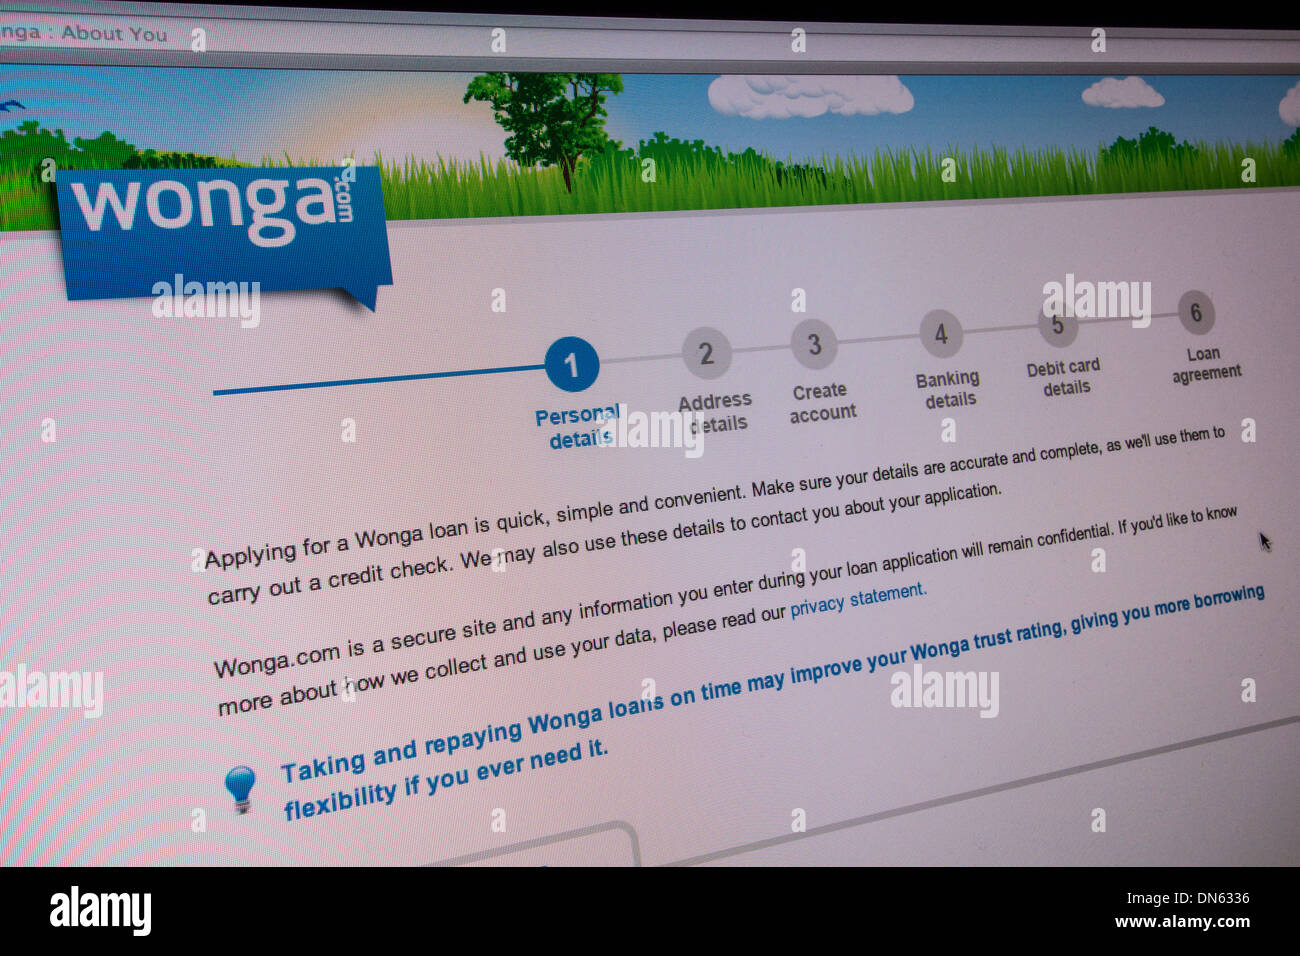 Screenshot del sito web Wonga.com. Essi sono payday loan company offre prestiti a breve termine ad alto interesse. Foto Stock